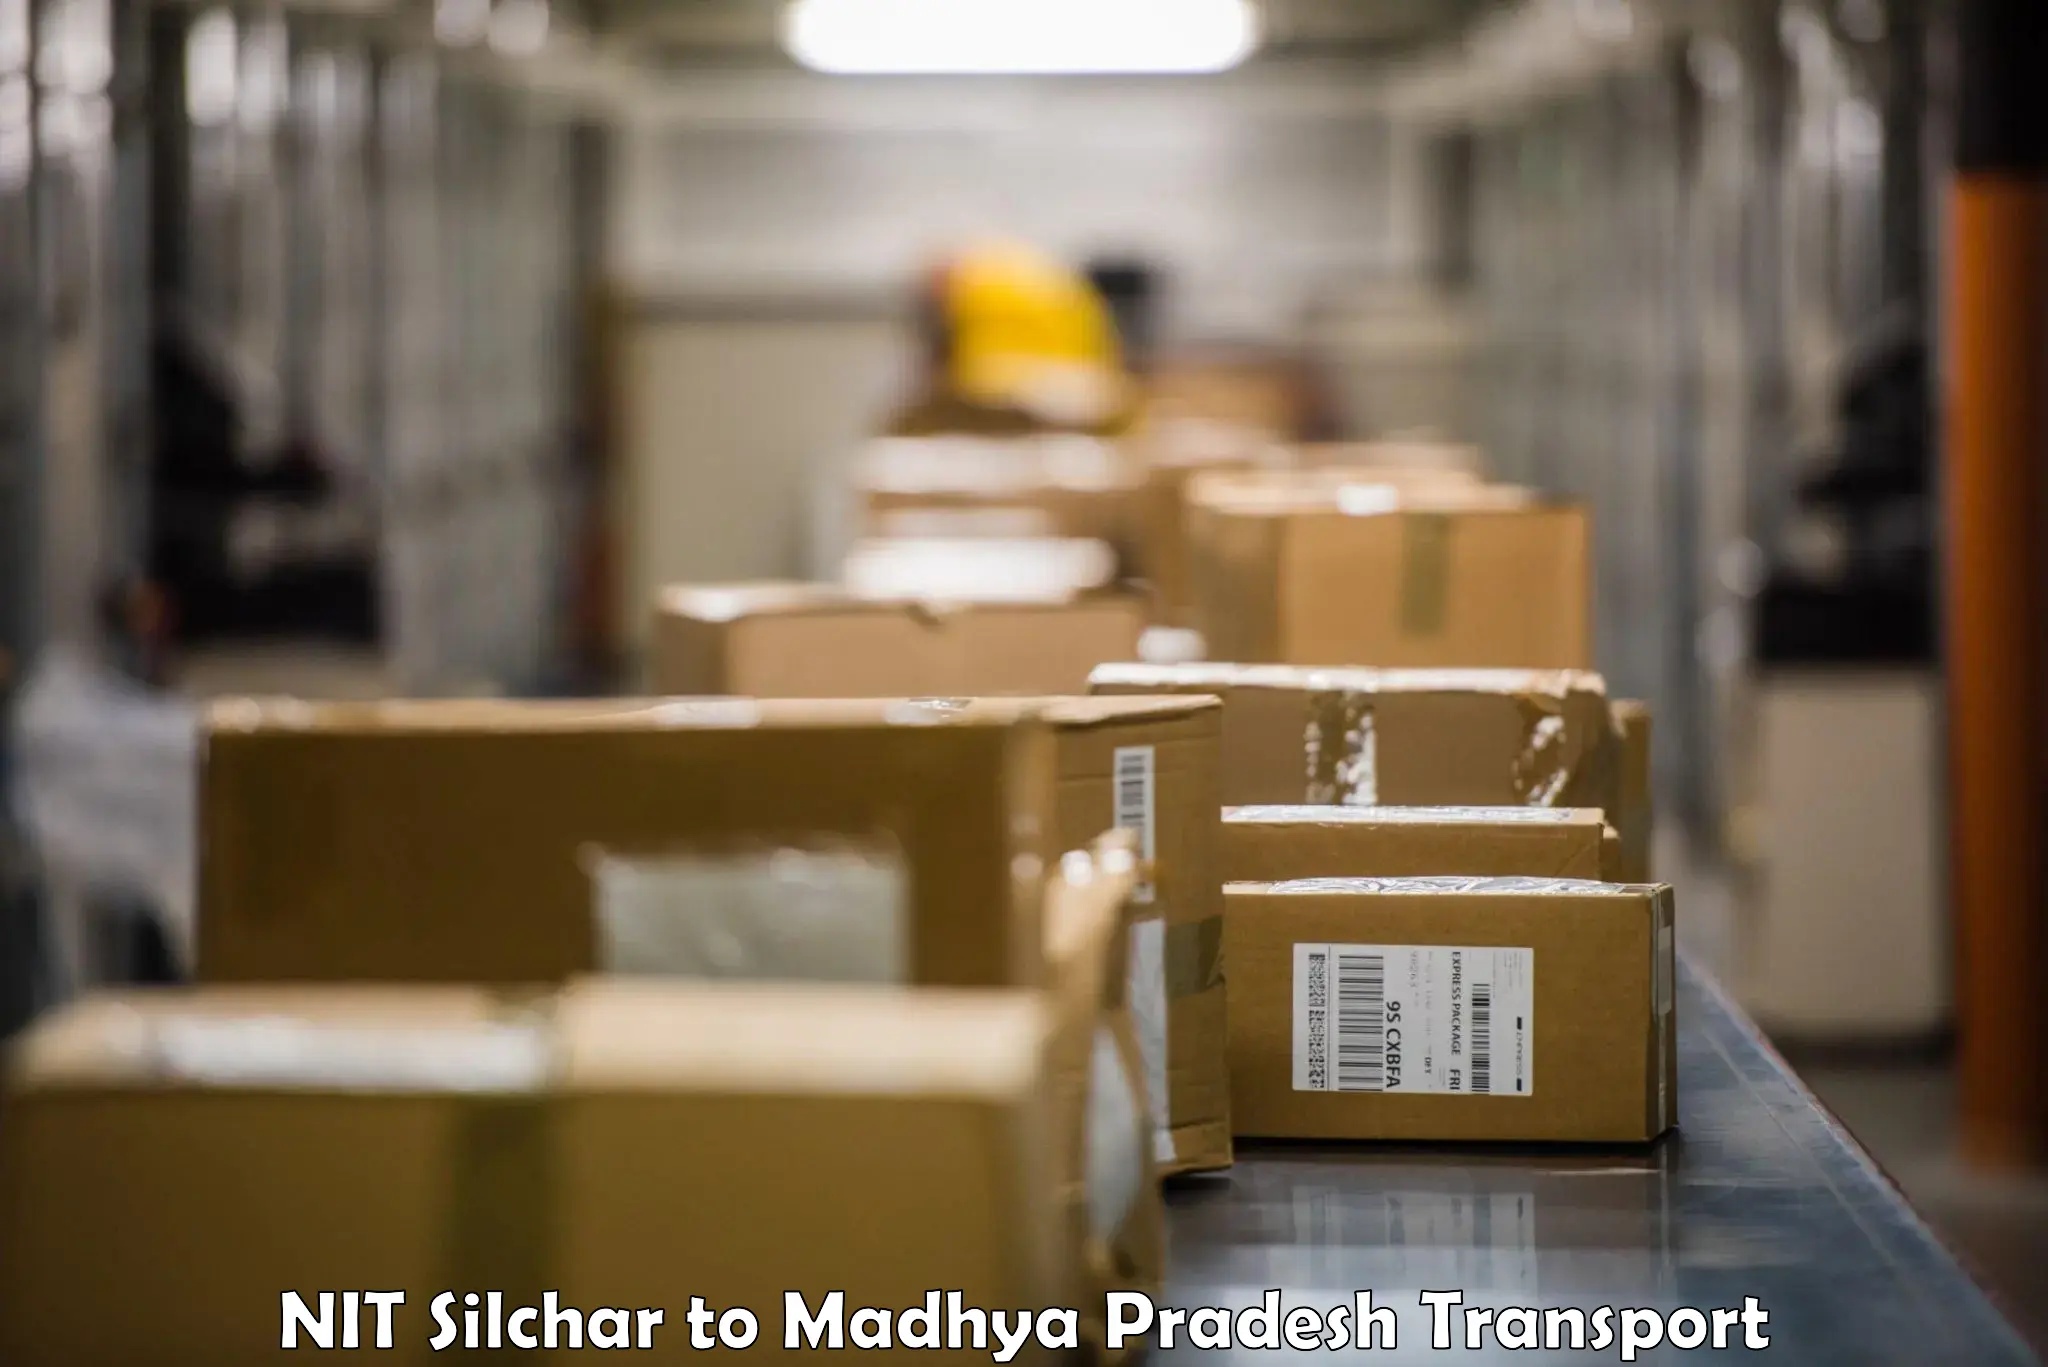 Bike shipping service NIT Silchar to Satna